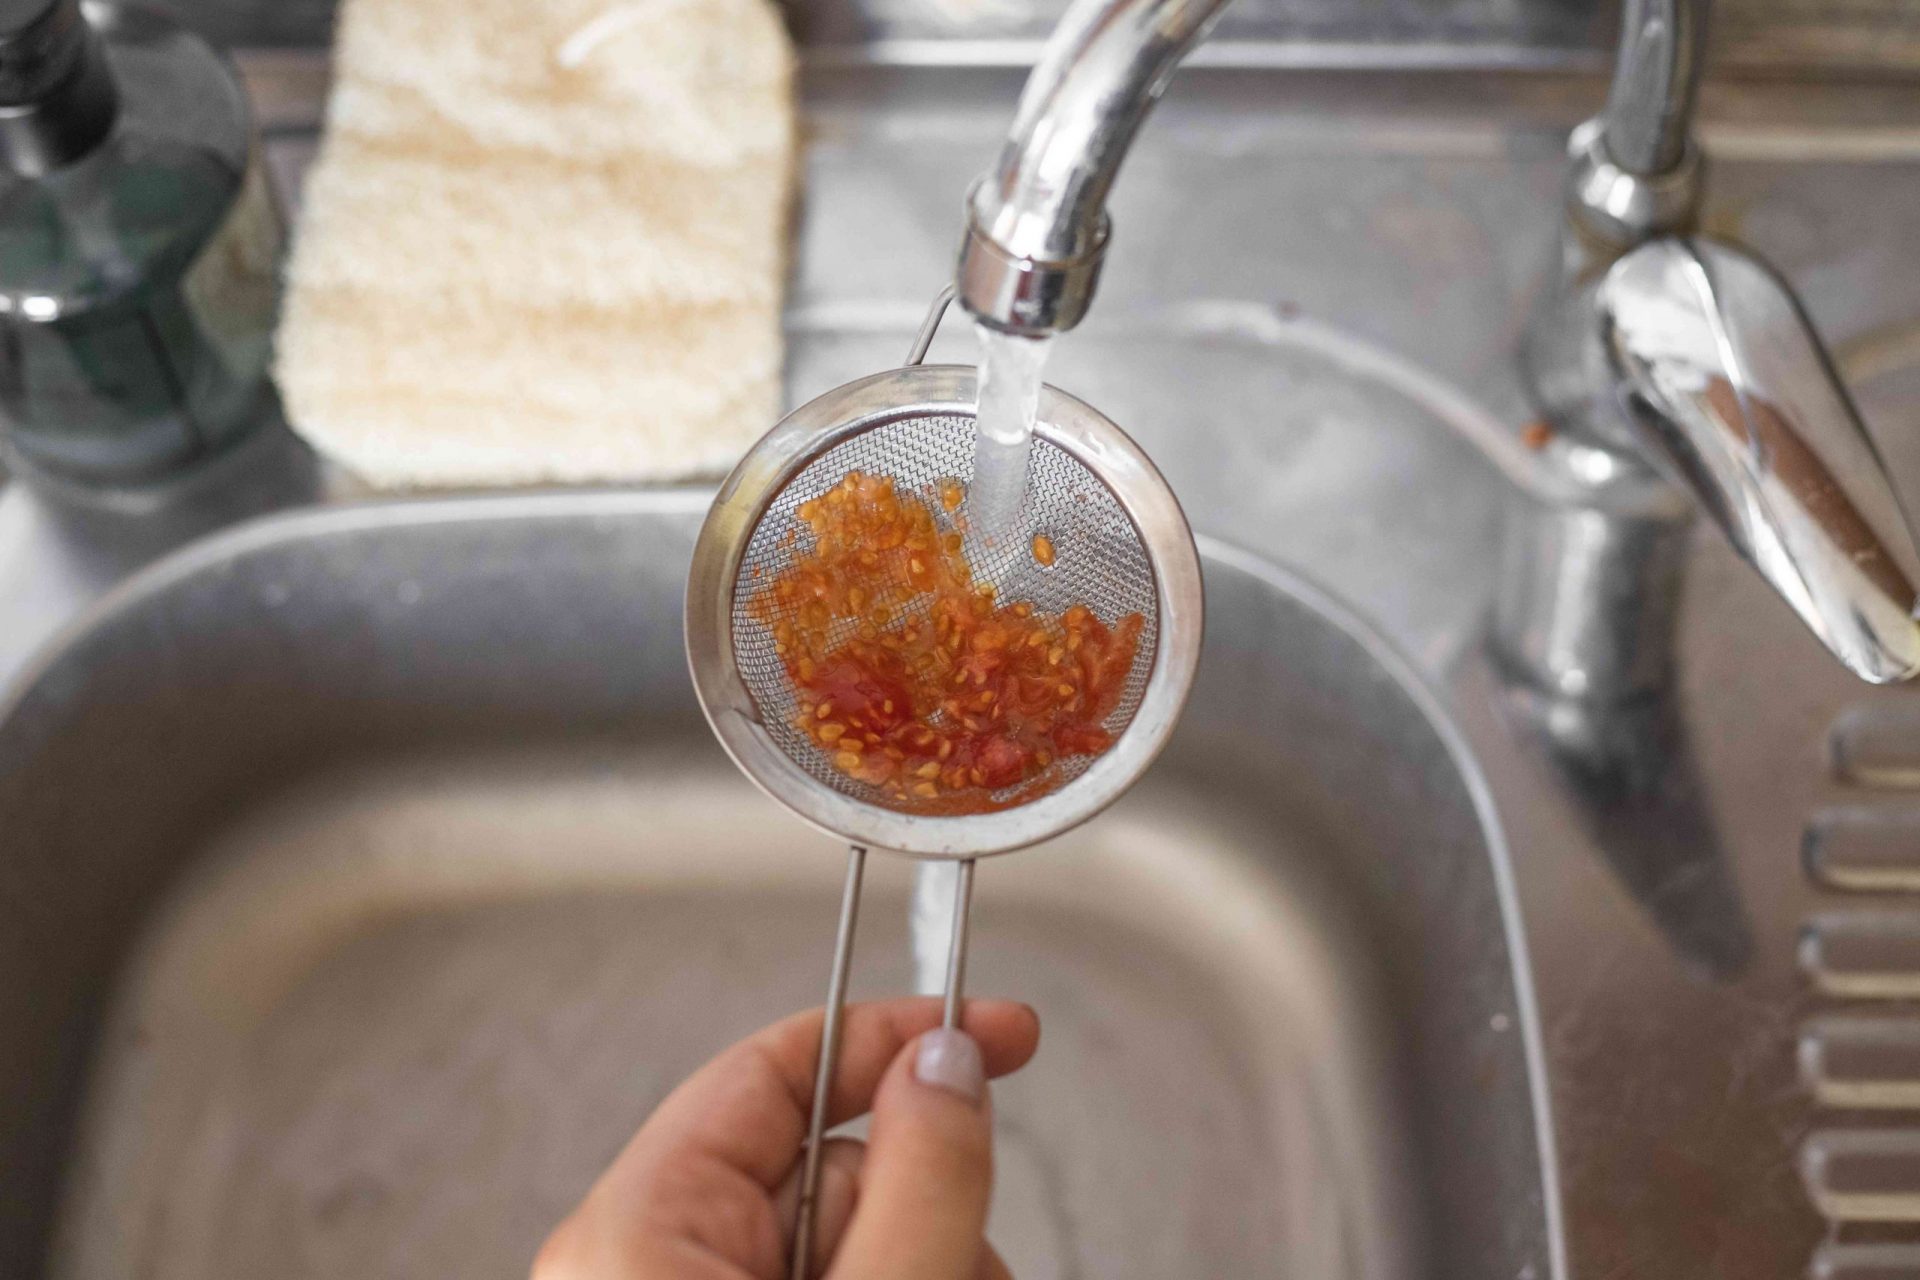 las manos hacen correr agua fría del fregadero sobre las semillas de tomate fermentadas en un pequeño colador de plata